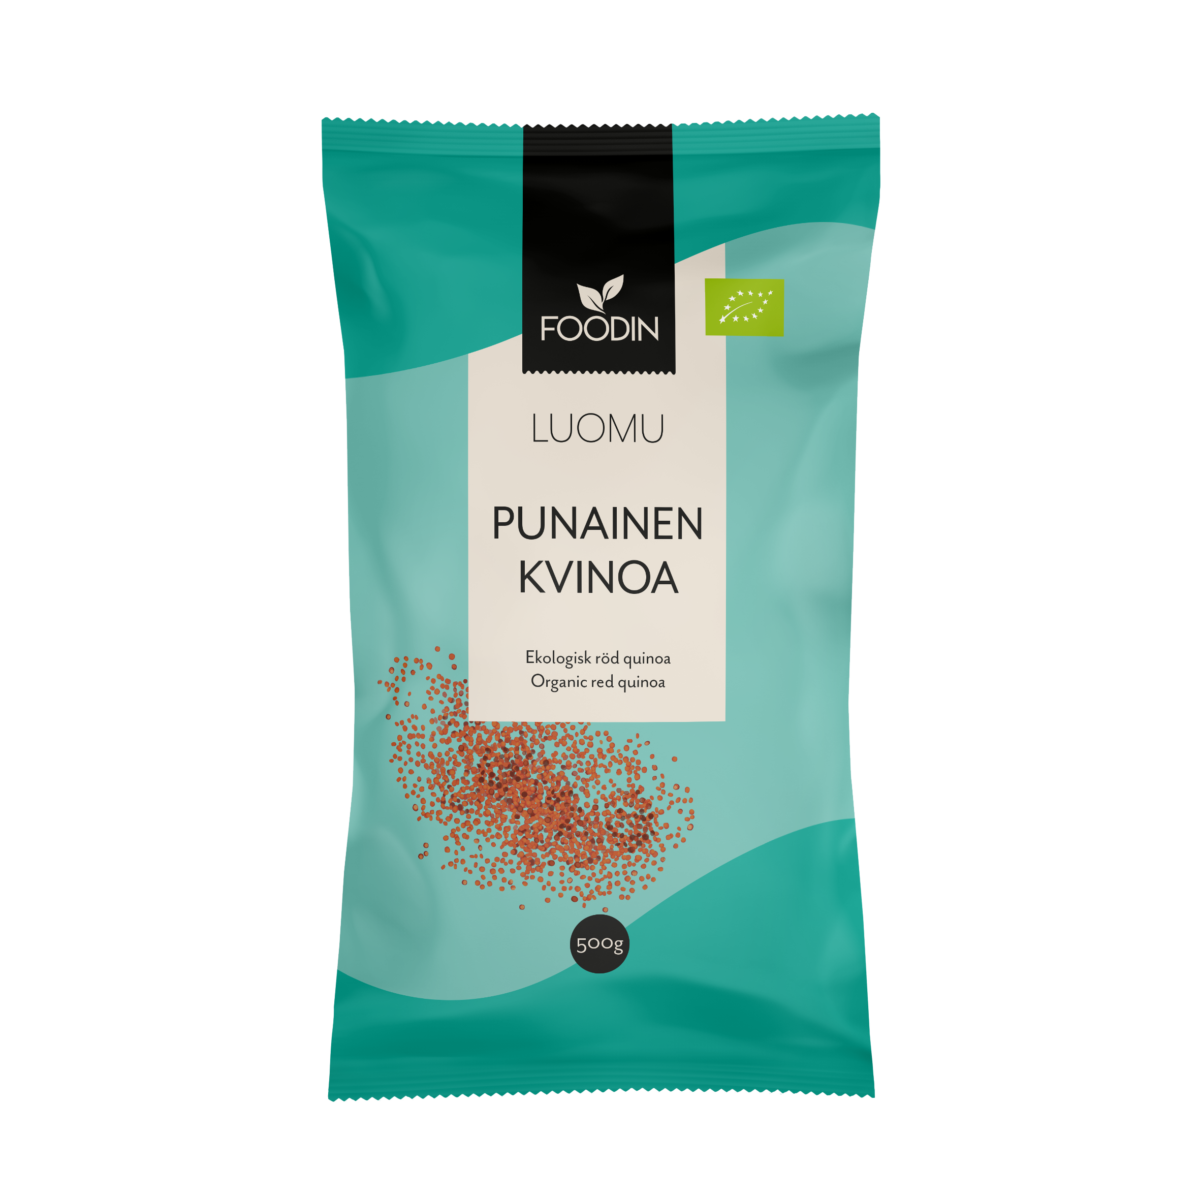 Punainen kvinoa, luomu 500g - Foodin